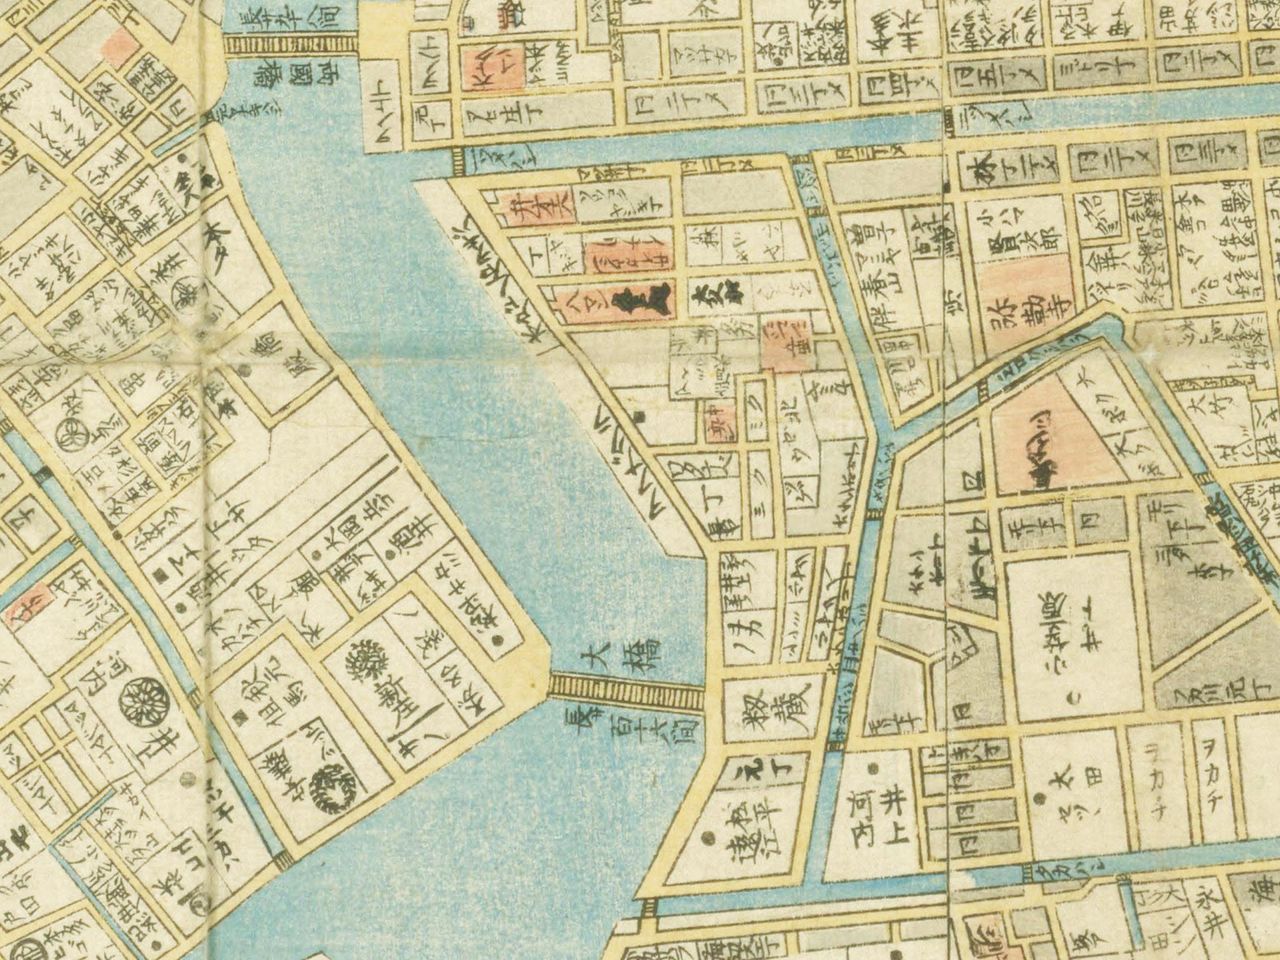 Un extrait de la « Grande carte d’Edo révisée dans les années Ansei ». On observe, au centre, à l’est du de la Sumida, un lieu nommé Atake (réserve de la bibliothèque de la Diète).